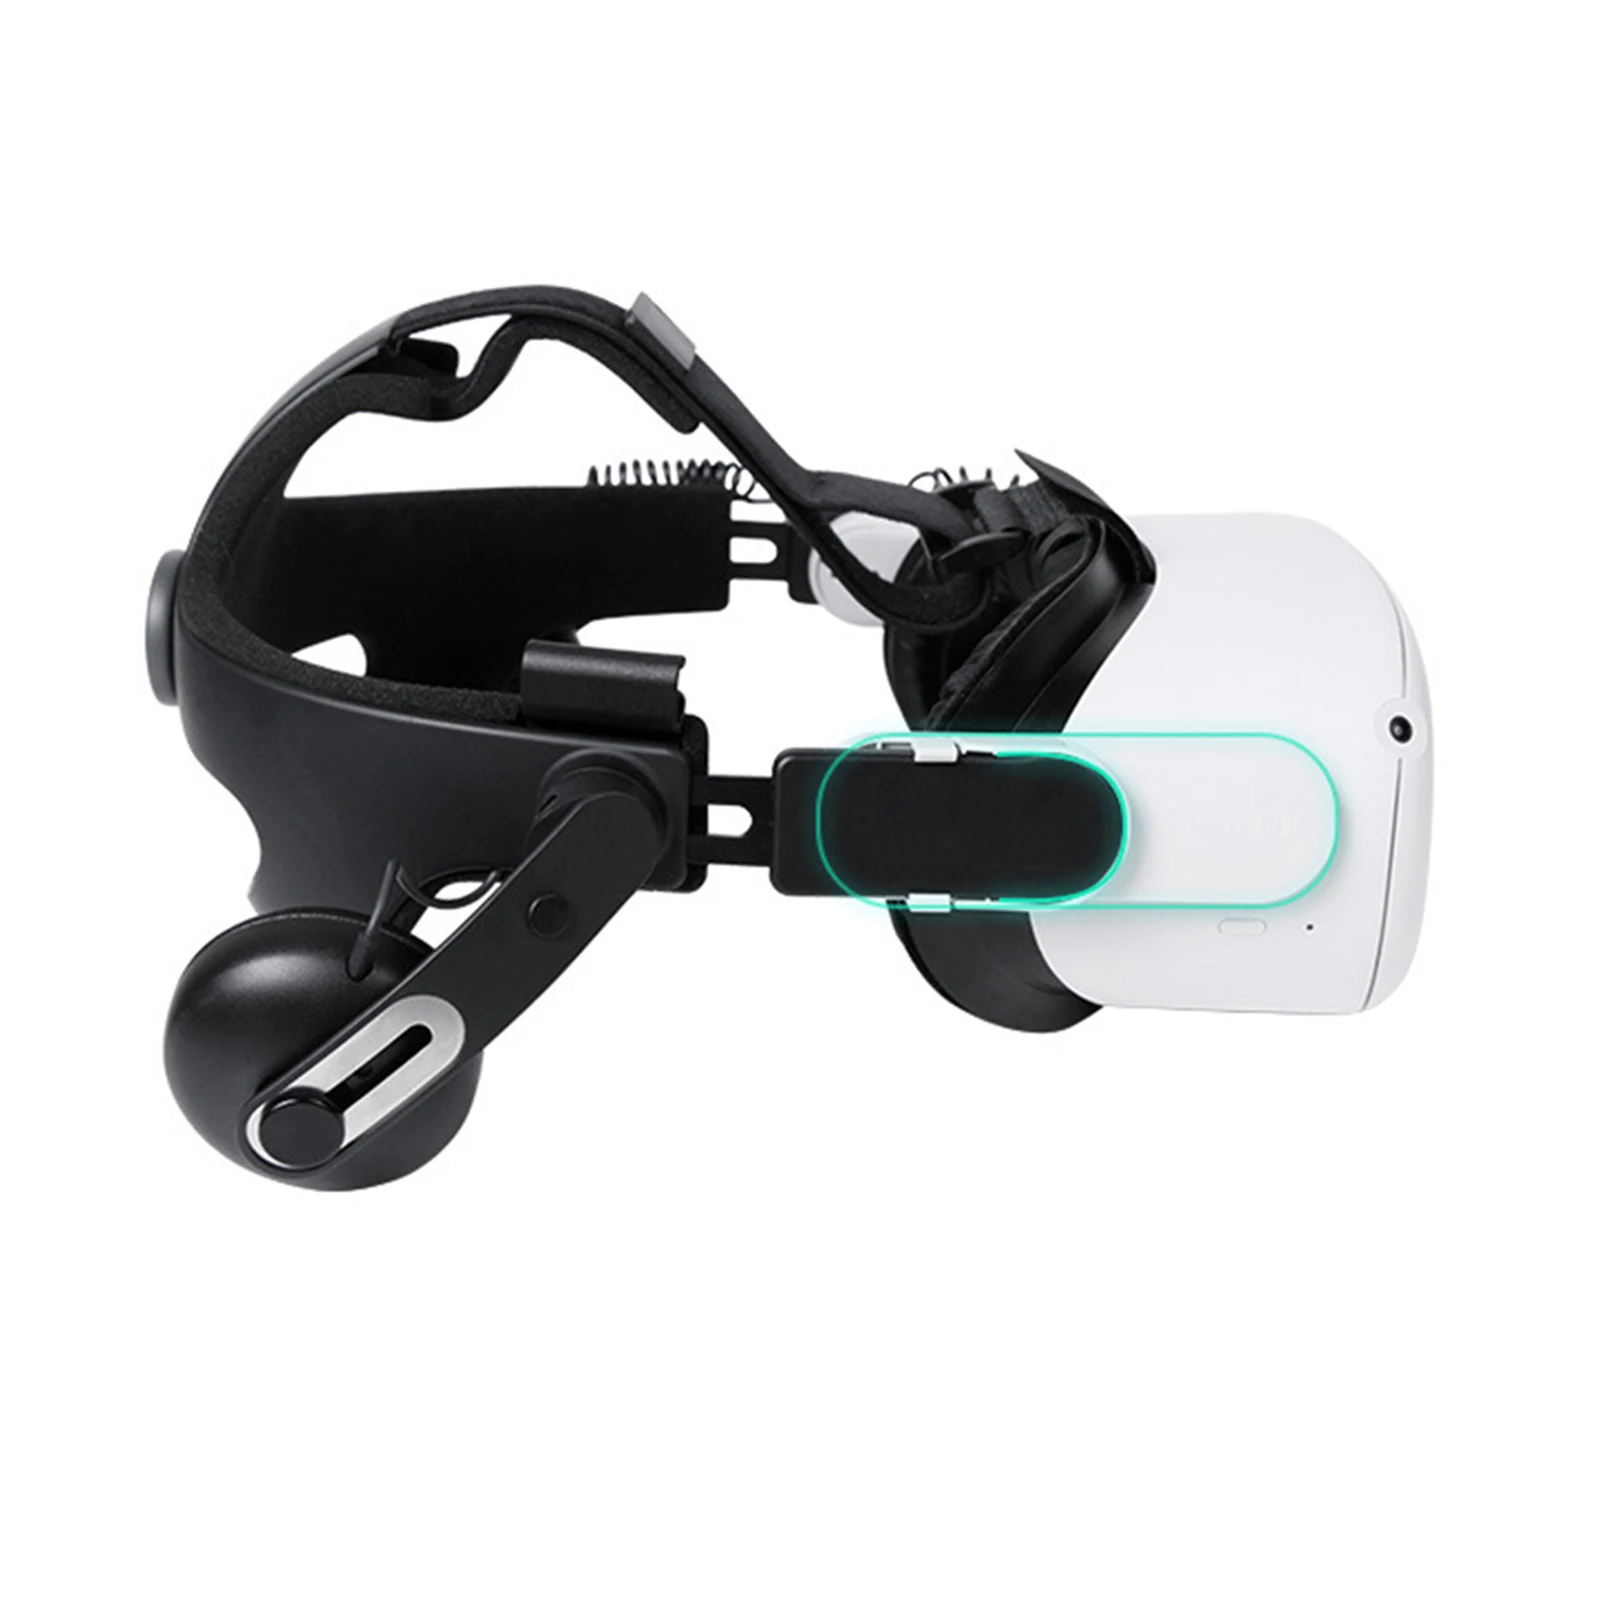 Zestaw słuchawkowy Adapter Audio dla HTC VIVE zestaw słuchawkowy Adapter Audio VR opaska na głowę złącze pasek zestaw do Oculus Quest 2